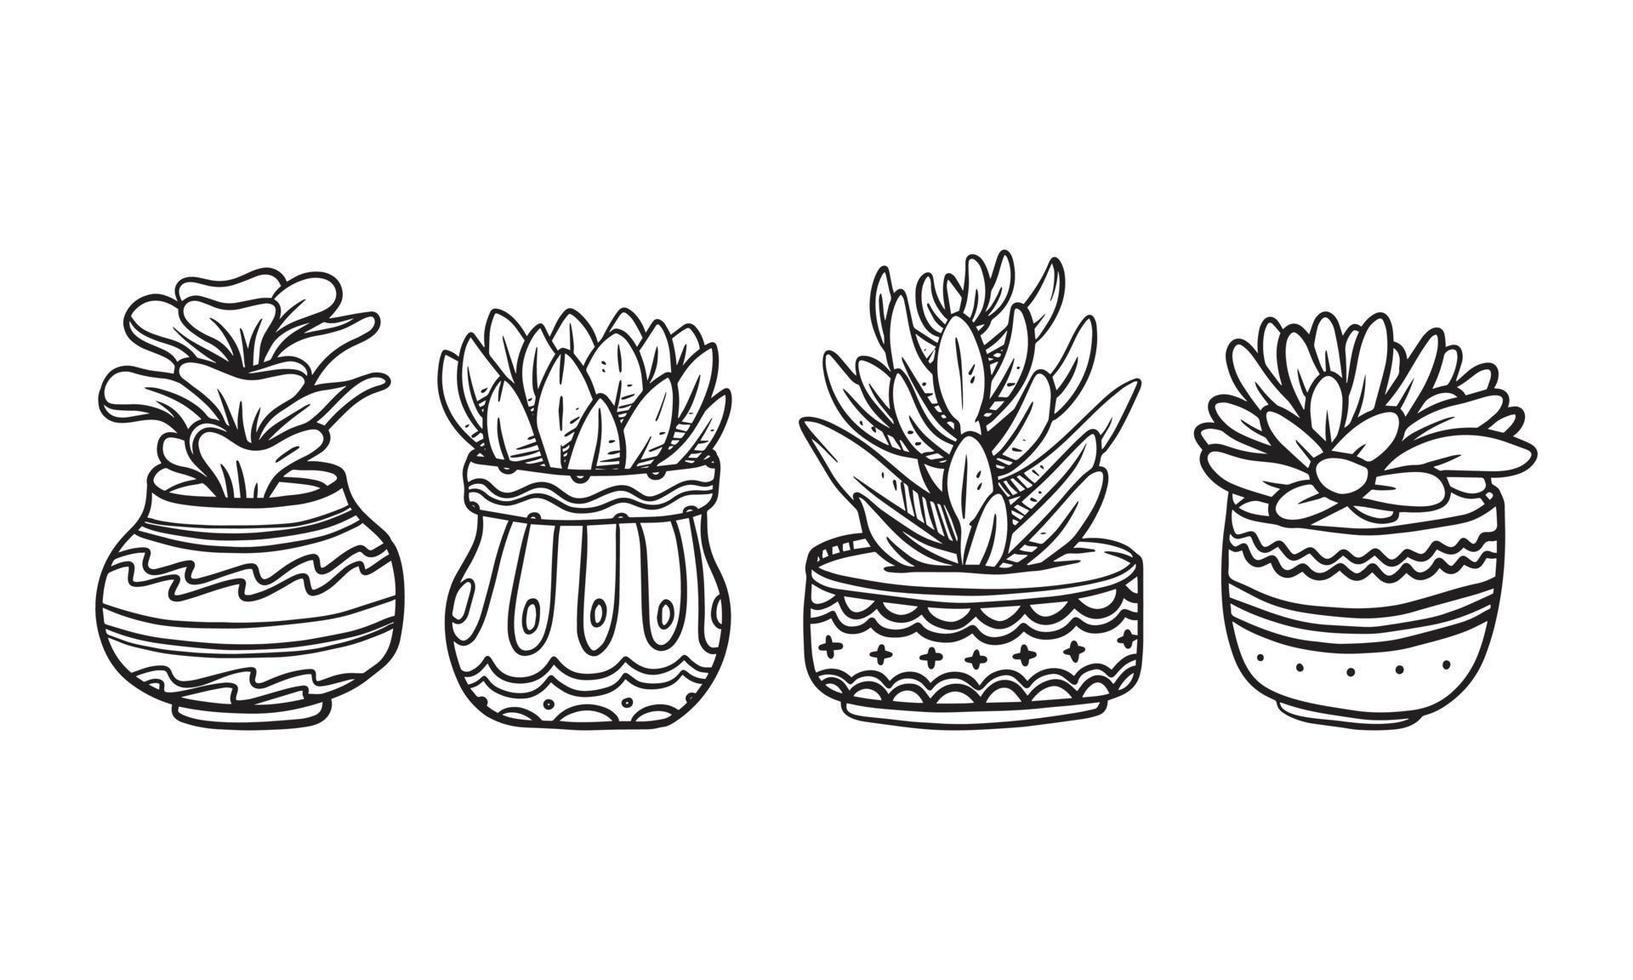 ensemble d'illustrations vectorielles dessinées à la main de plantes en pot, éléments graphiques isolés de plantes pour la conception, plante succulente avec illustration de feuilles pour créer un design romantique ou vintage. vecteur